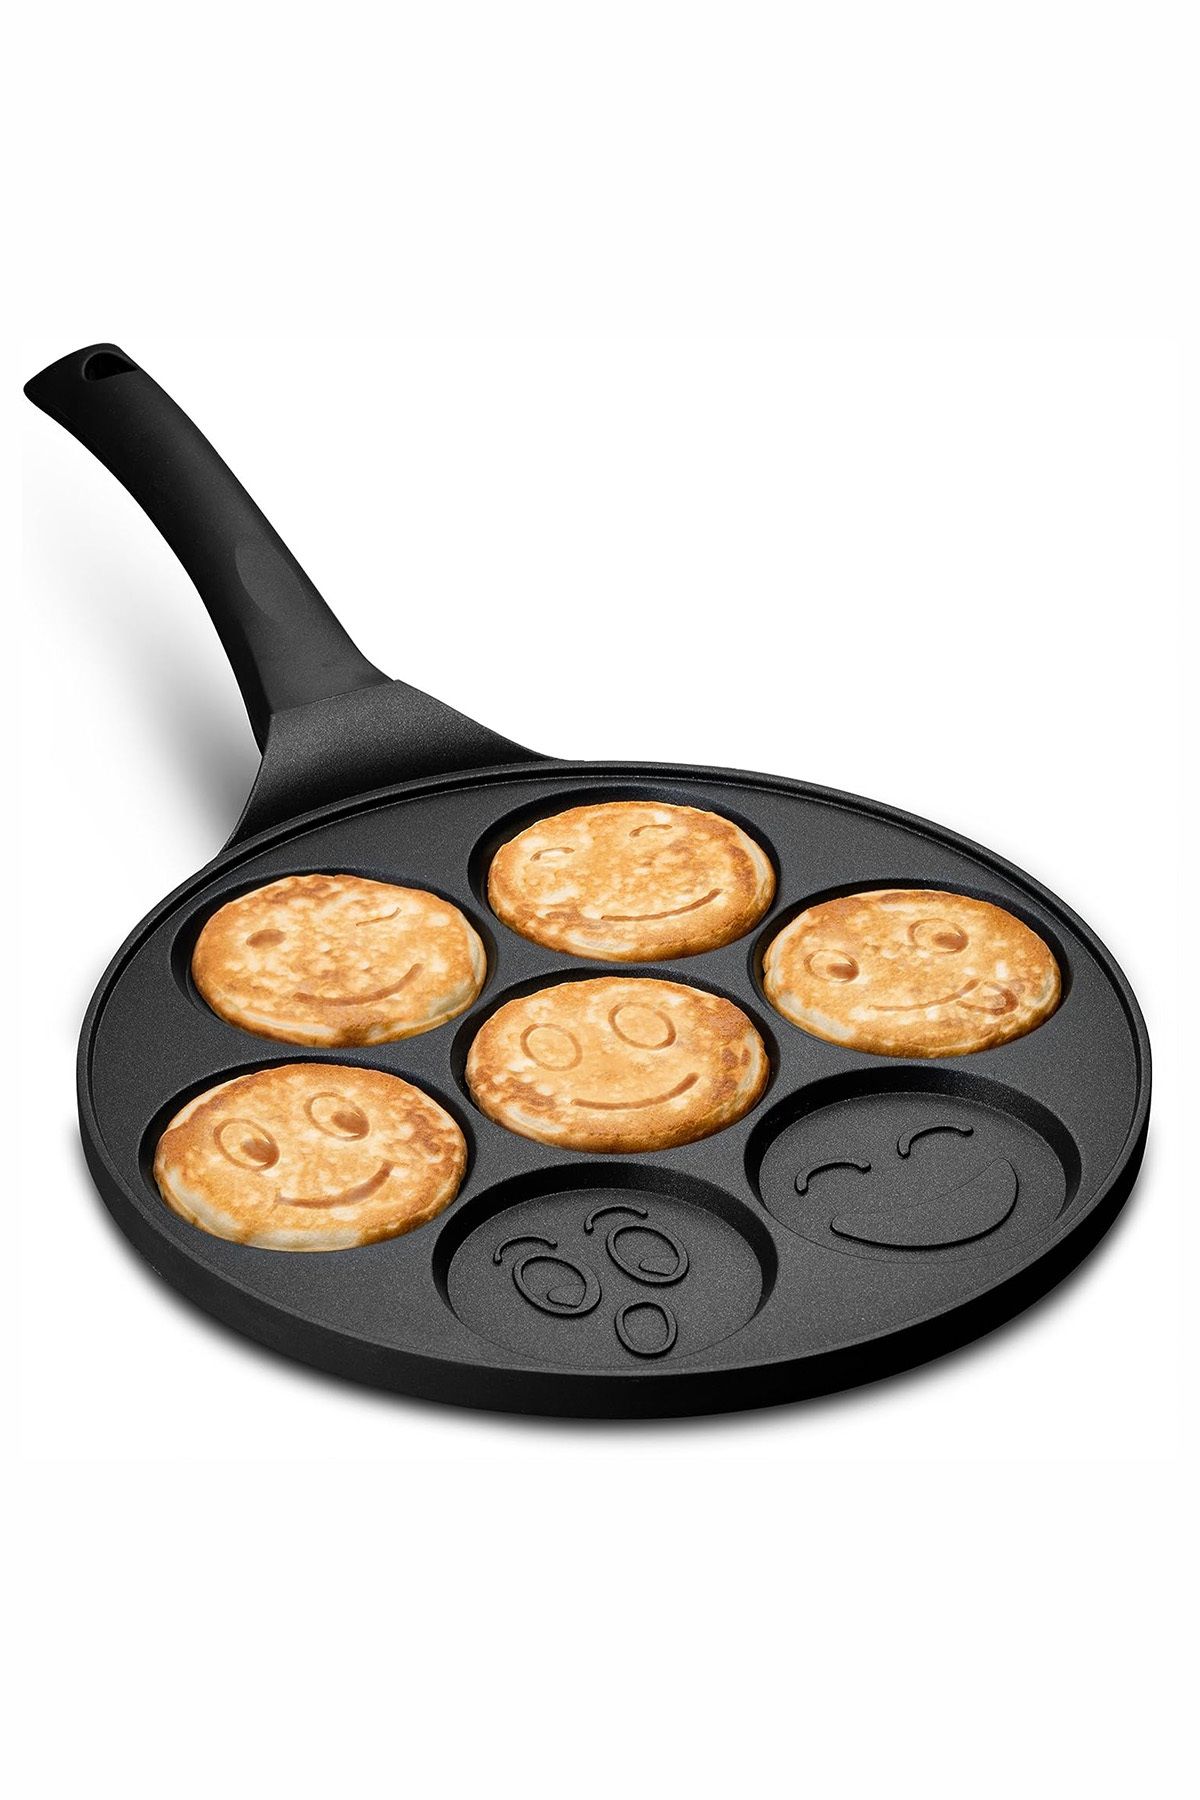 CARNIVAL LAND Döküm Granit Kaplama Emoji Pankek Tavası Pancake Siyah 28cm Pratik Kahvaltılık Tava